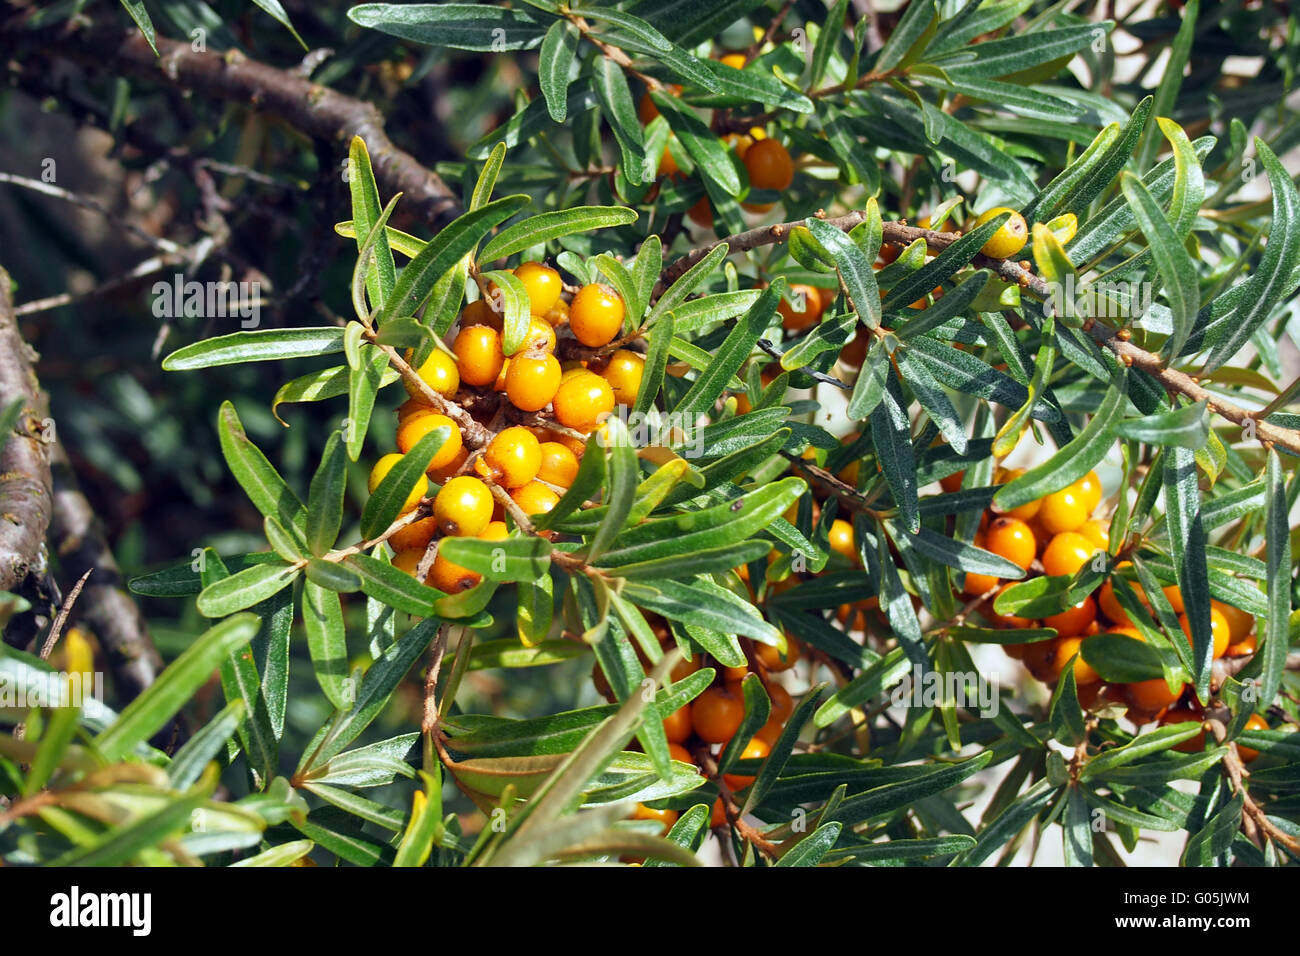 Sallow thorn bacche di olivello spinoso Foto Stock